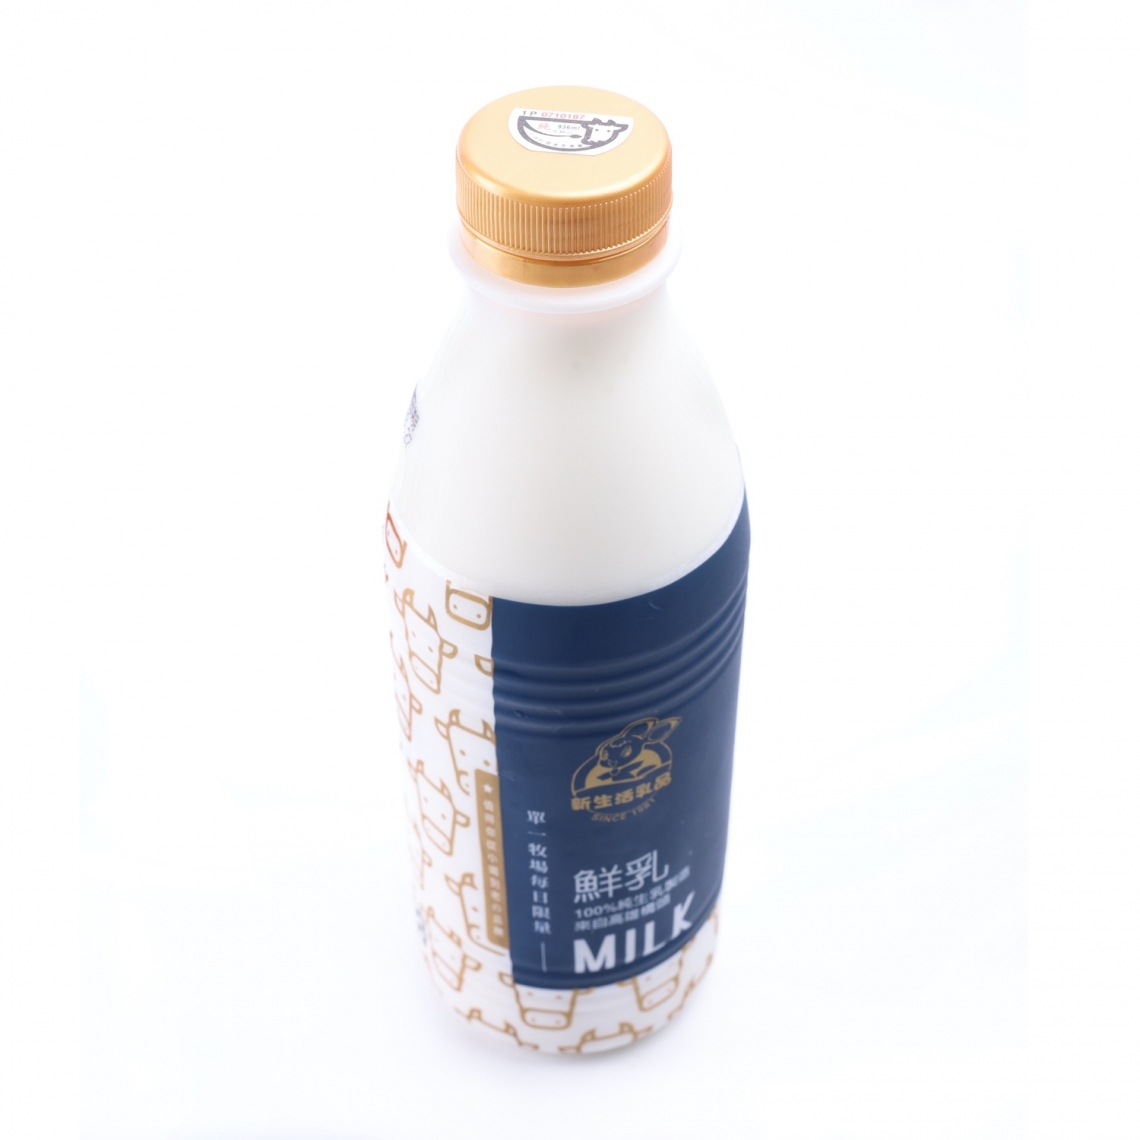 #新生活鮮乳 單一乳源每日限量供應 新生活鮮乳賣的是100%純生乳製造的鮮乳，生乳不像水龍頭一樣開關自如，因此才會有每日限量。 擠出一滴滴鮮奶到裝瓶，物流的完整過程也都要保持在7度C以下的溫度，才能維持鮮乳的新鮮度，所以你餐桌那瓶鮮乳真的是得來不易呀！